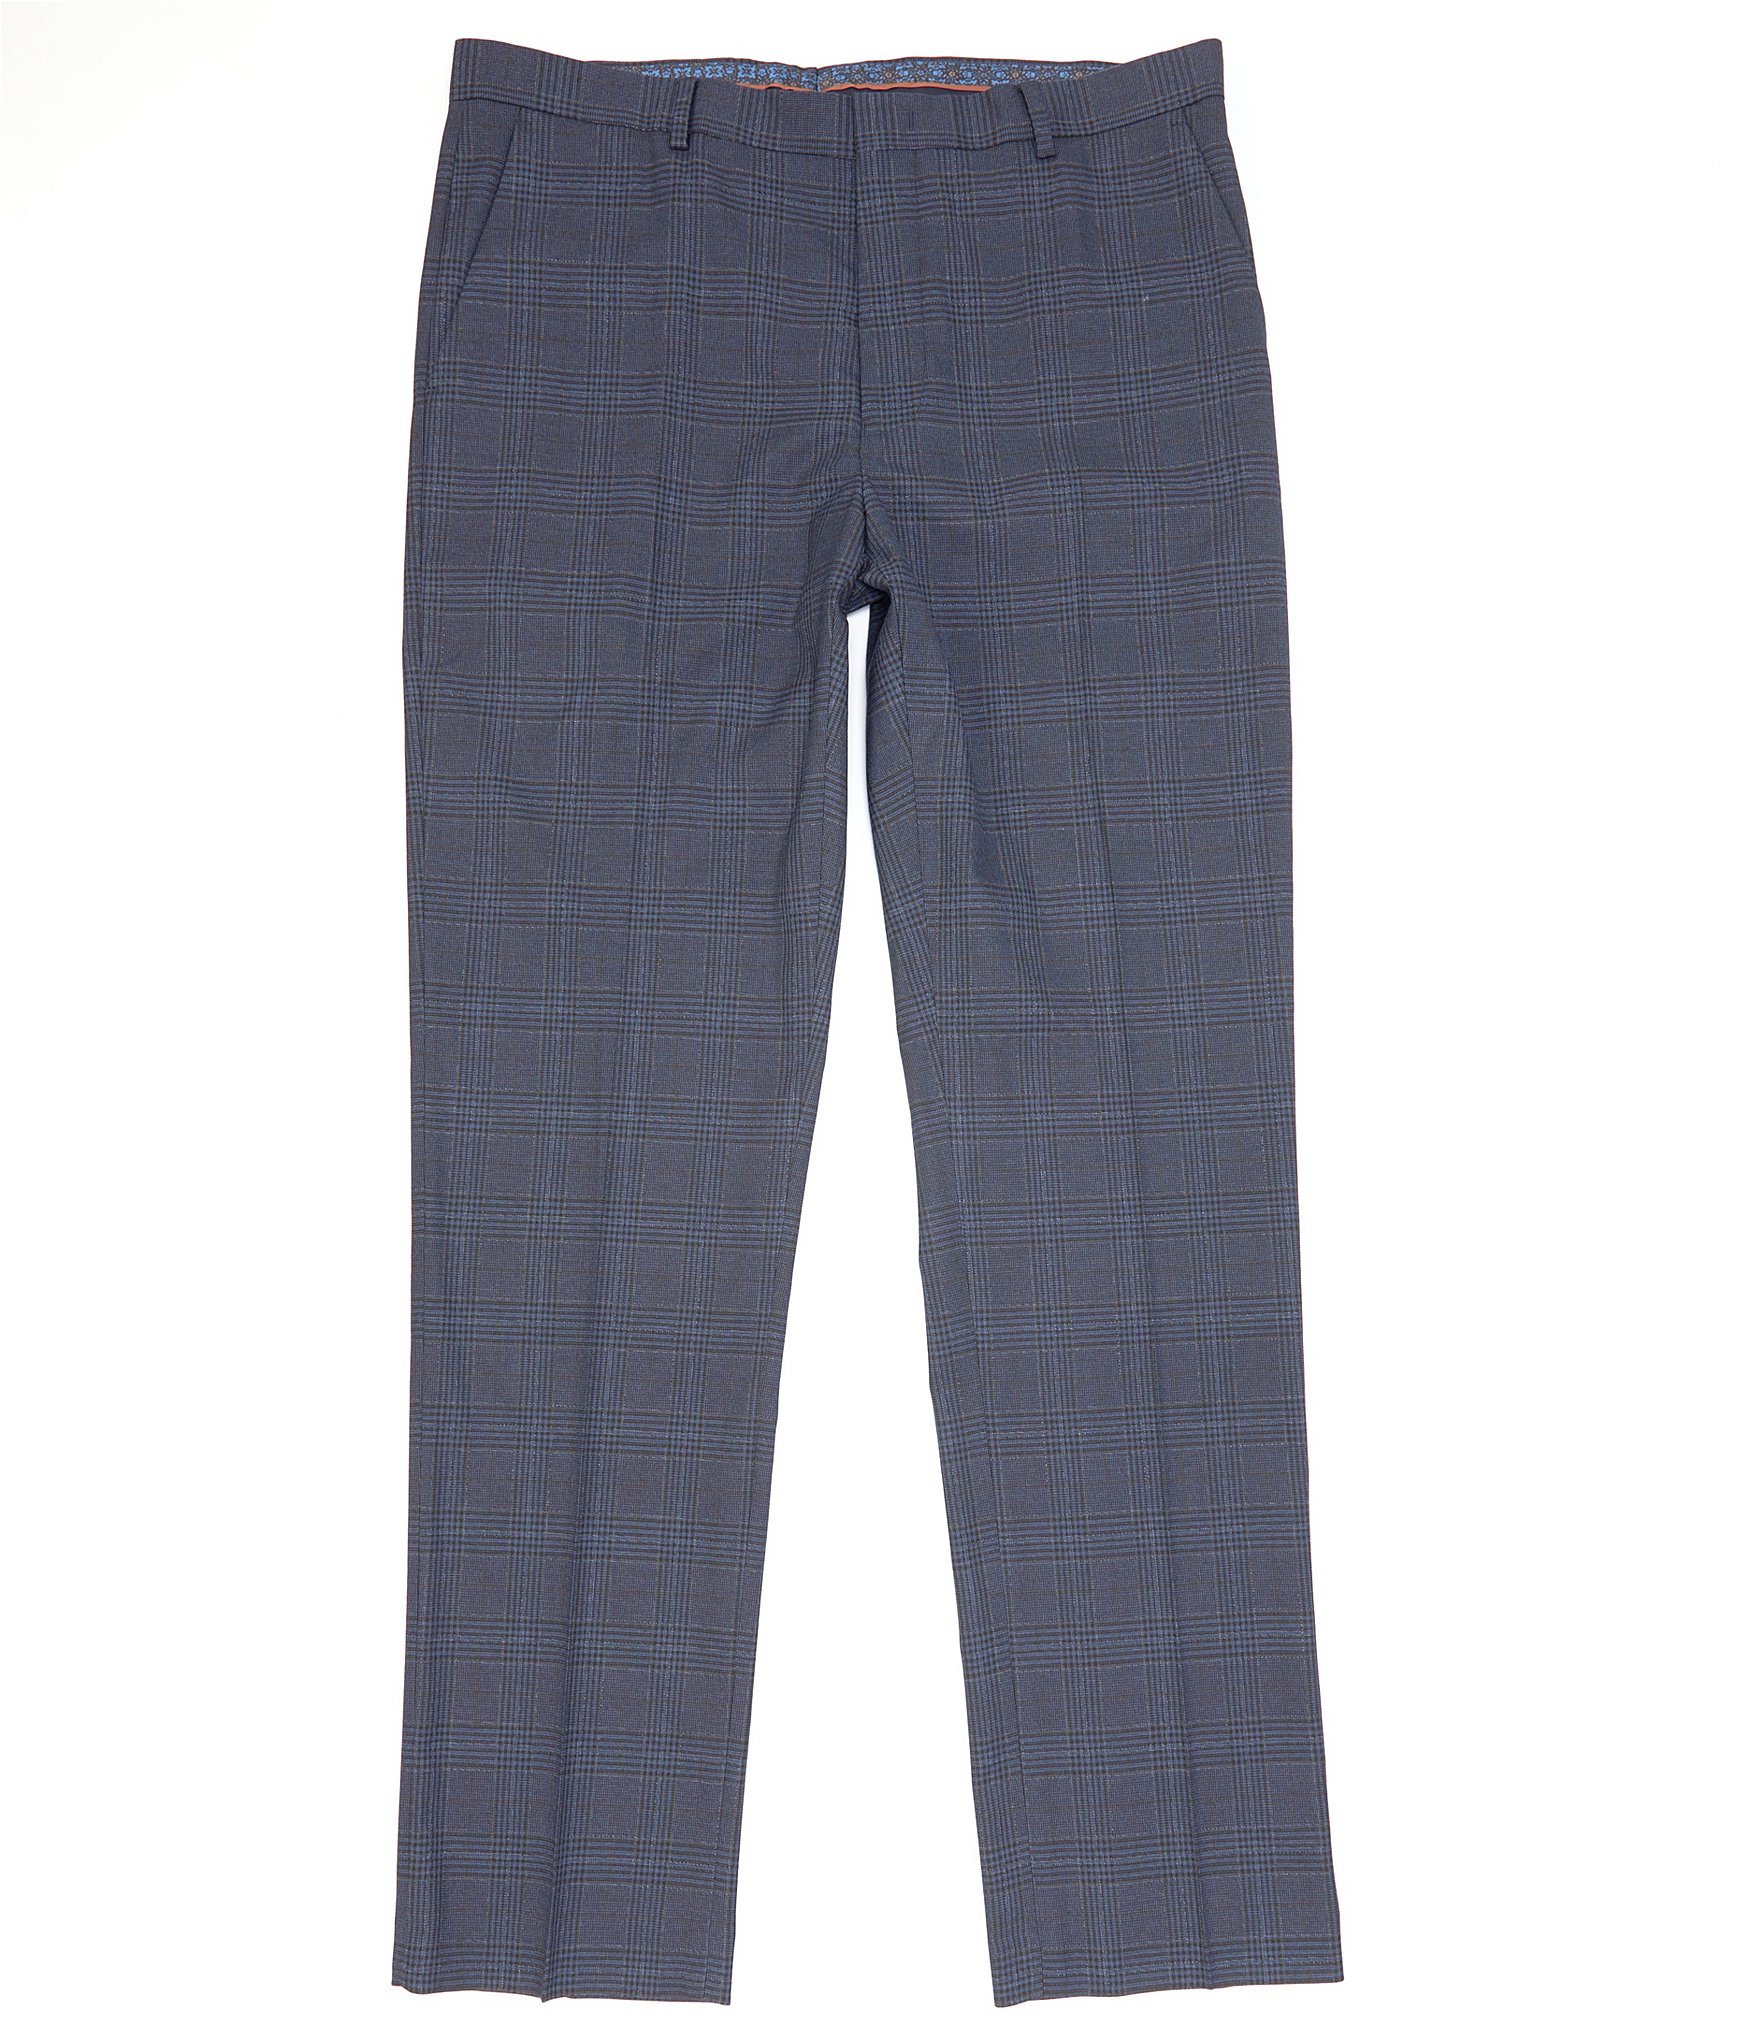 Murano Big & Tall Alex Slim-Fit Flat Front Plaid Dress Pants | Dillard's